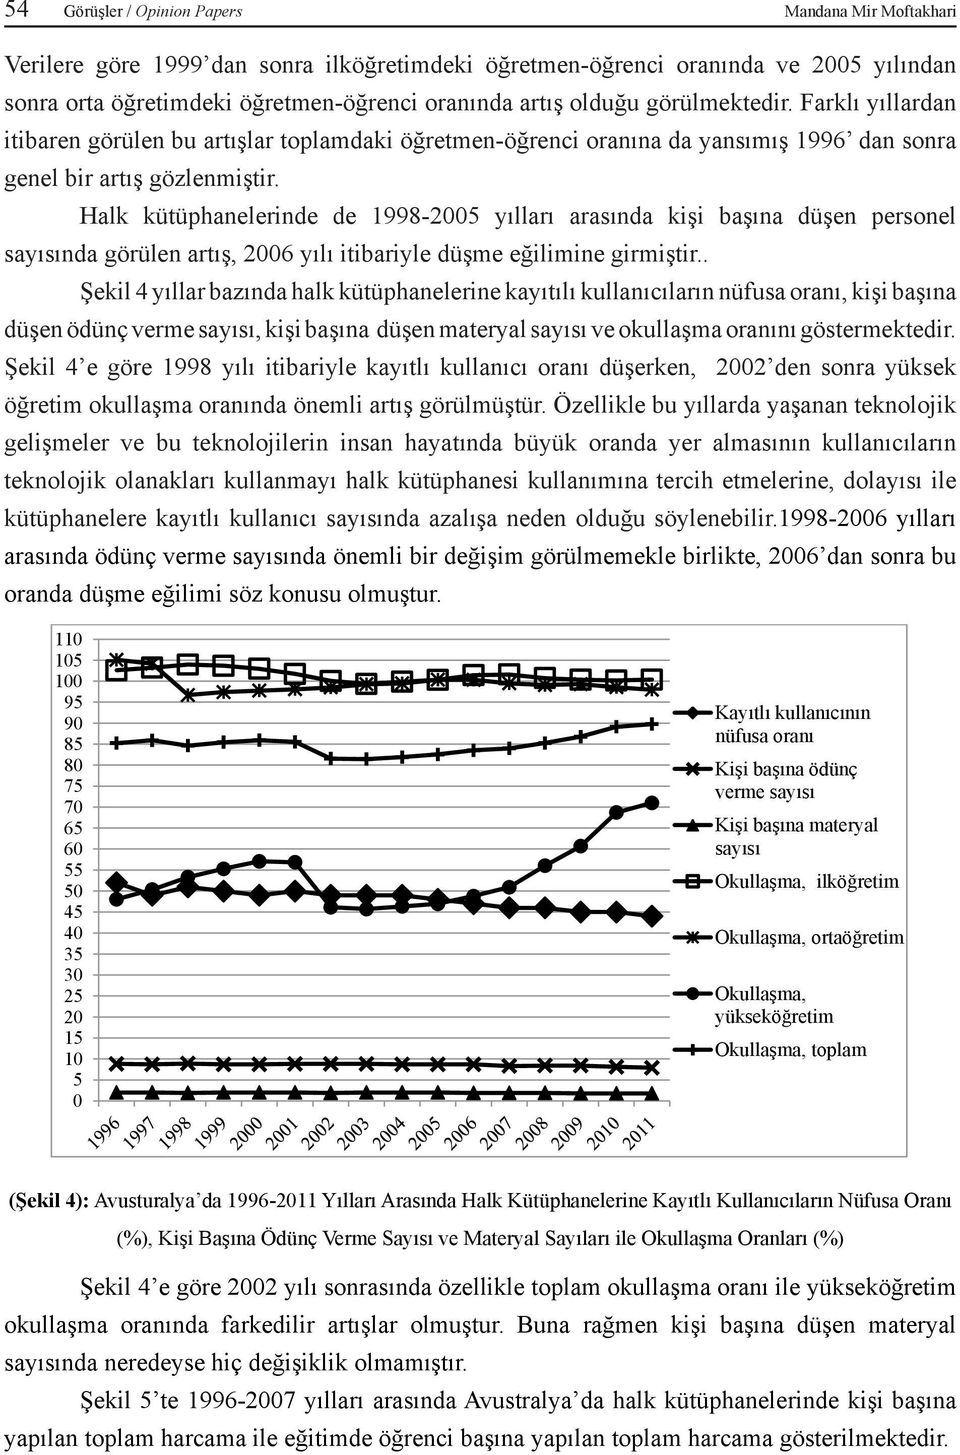 Halk kütüphanelerinde de 1998-2005 yılları arasında kişi başına düşen personel sayısında görülen artış, 2006 yılı itibariyle düşme eğilimine girmiştir.